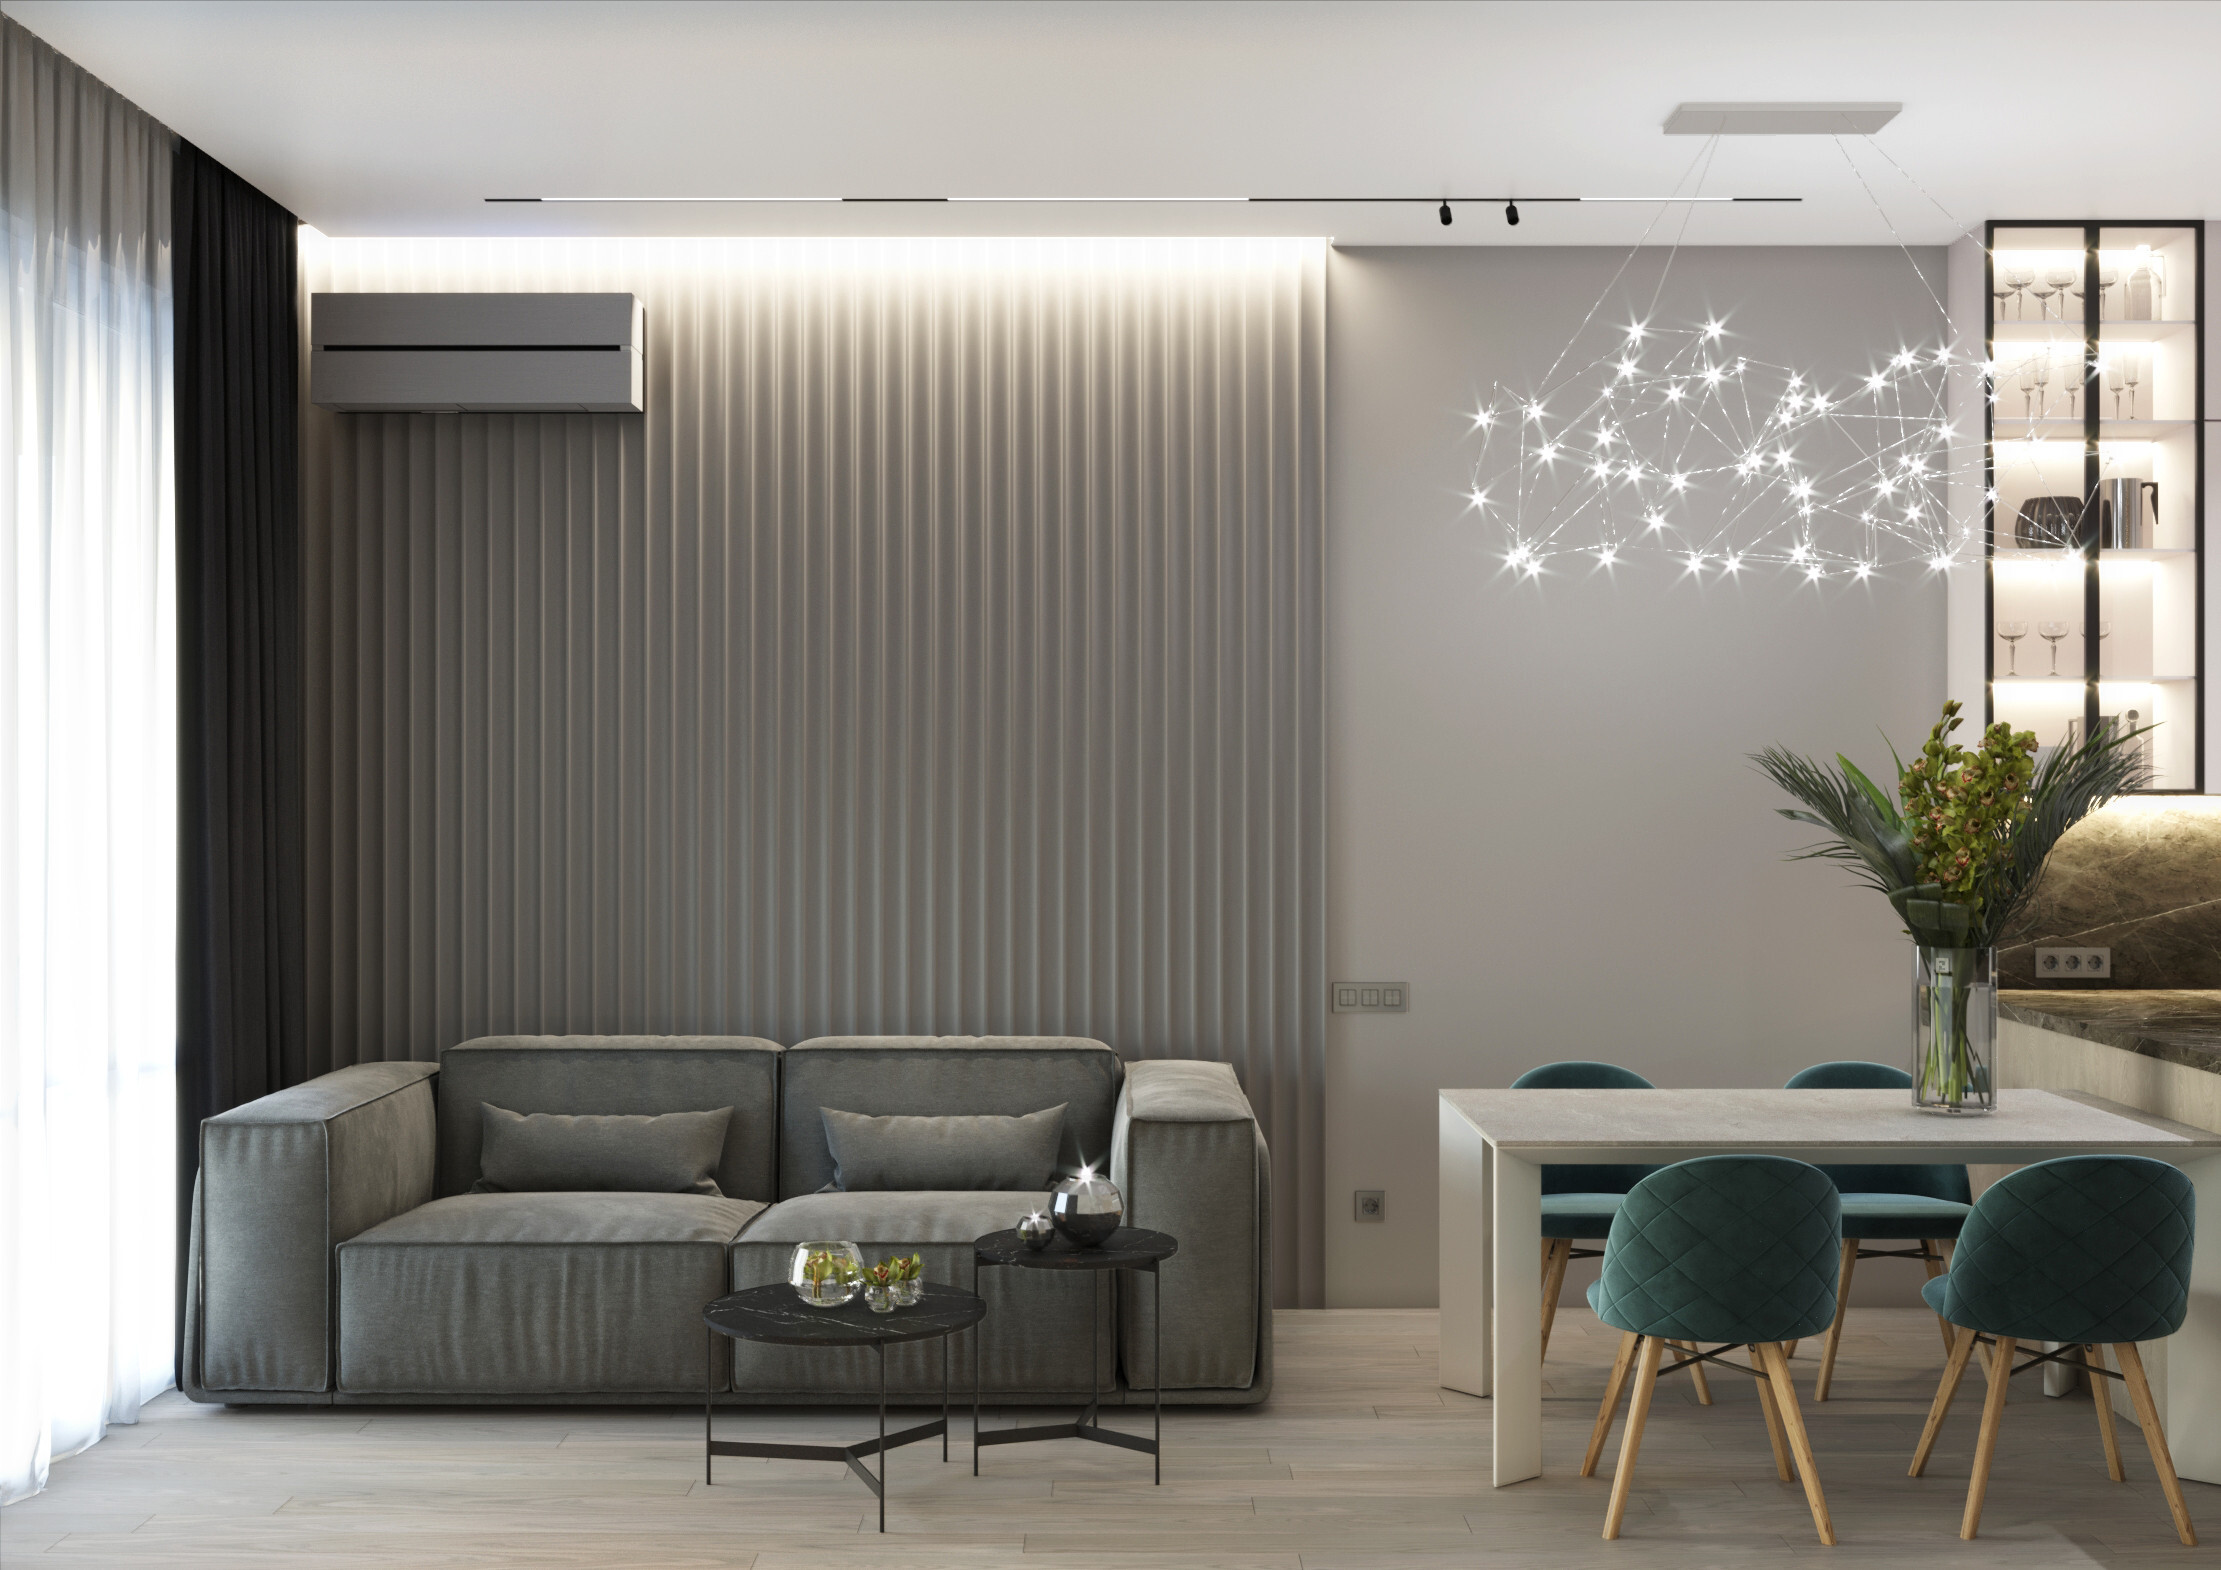 Интерьер гостиной cветовыми линиями, рейками с подсветкой, подсветкой настенной, подсветкой светодиодной и с подсветкой в современном стиле